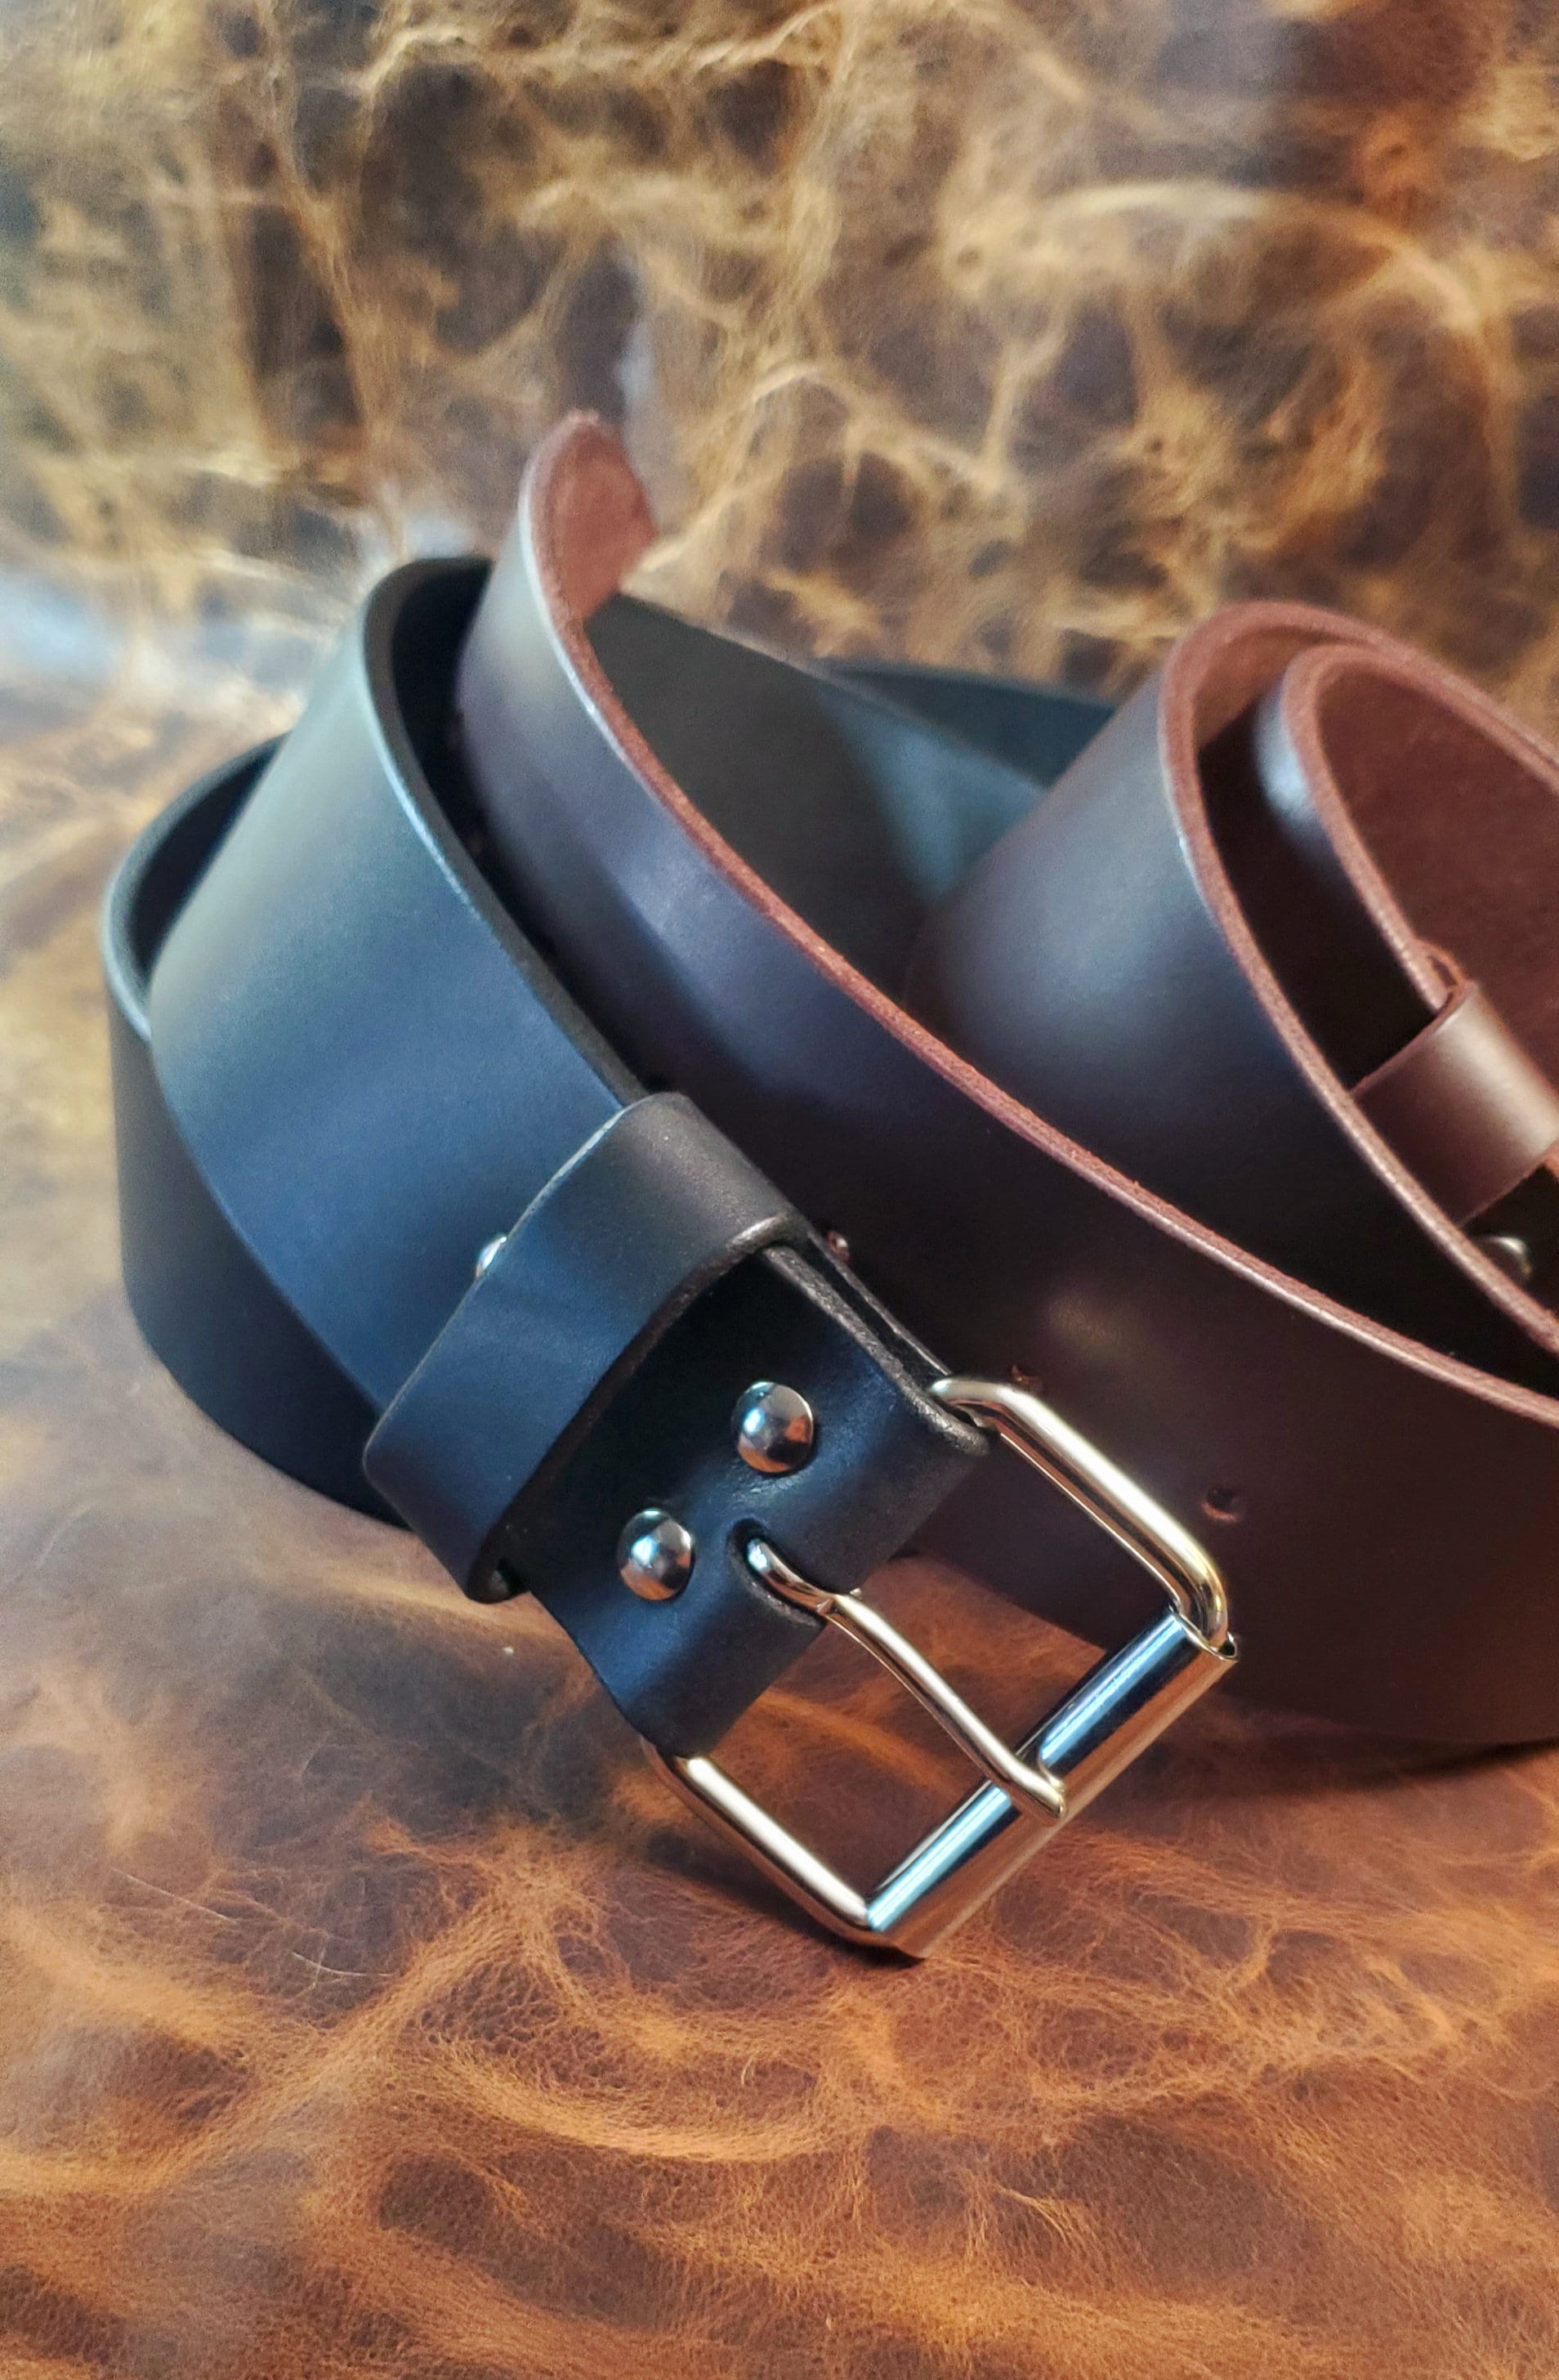 Handmade, oak bark leather heavy Garrison belt with solid brass buckle. —  ERNEST WALKER LTD.